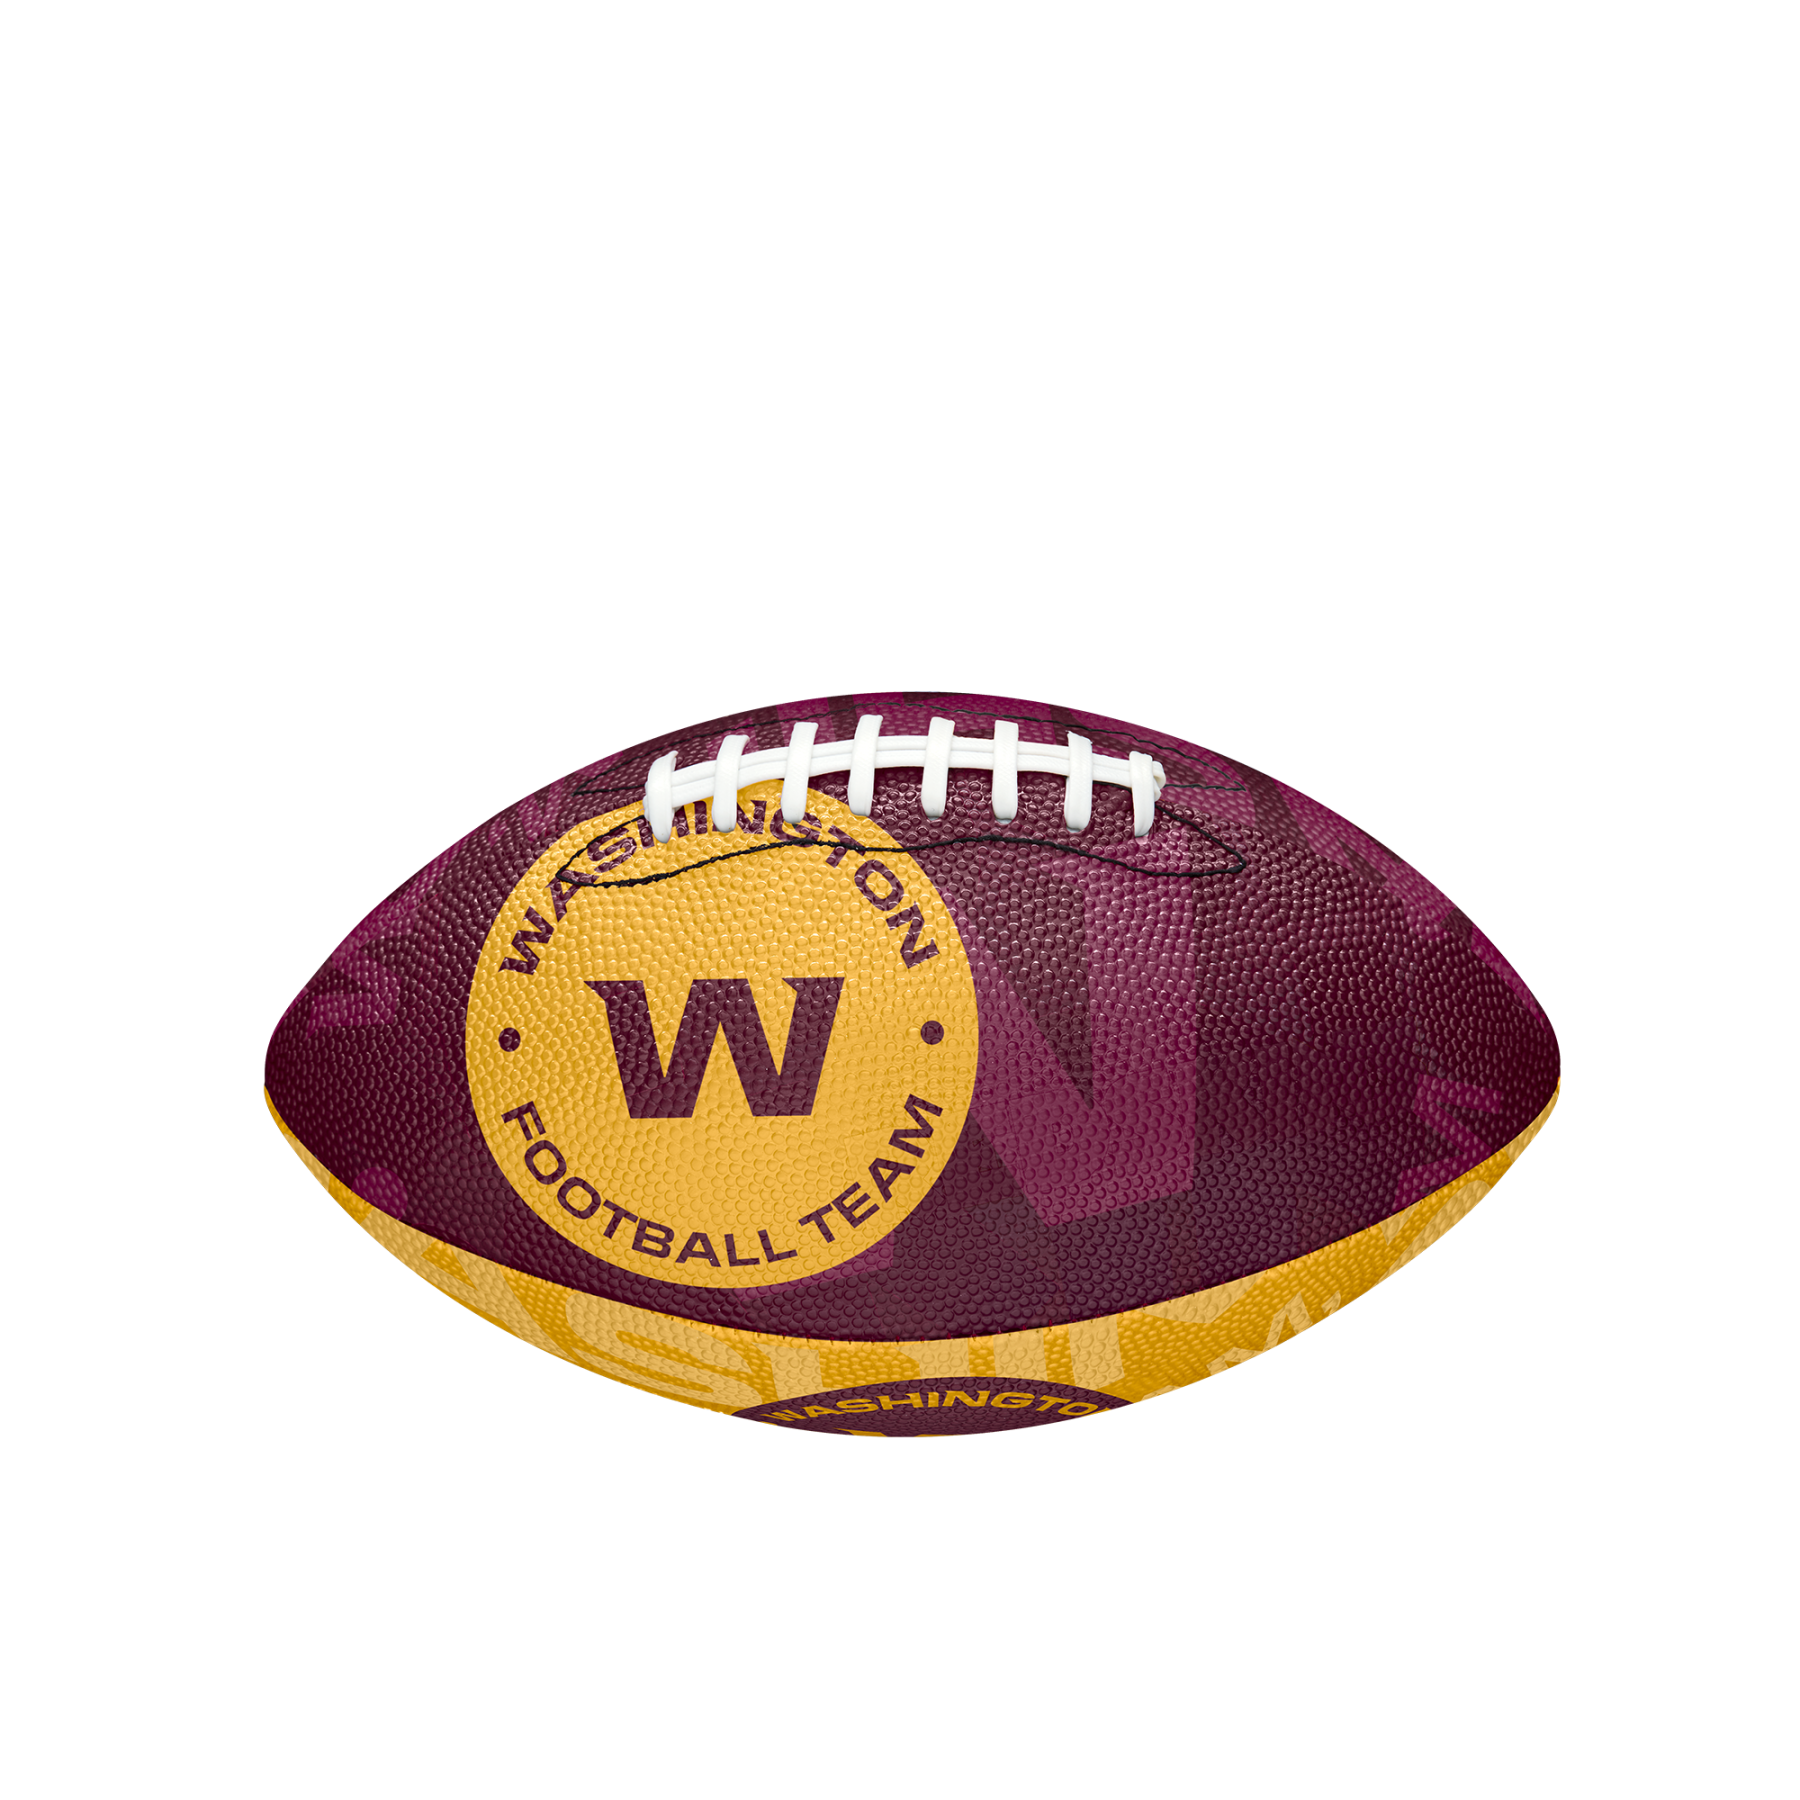 Children's ball Wilson Redskins NFL Logo